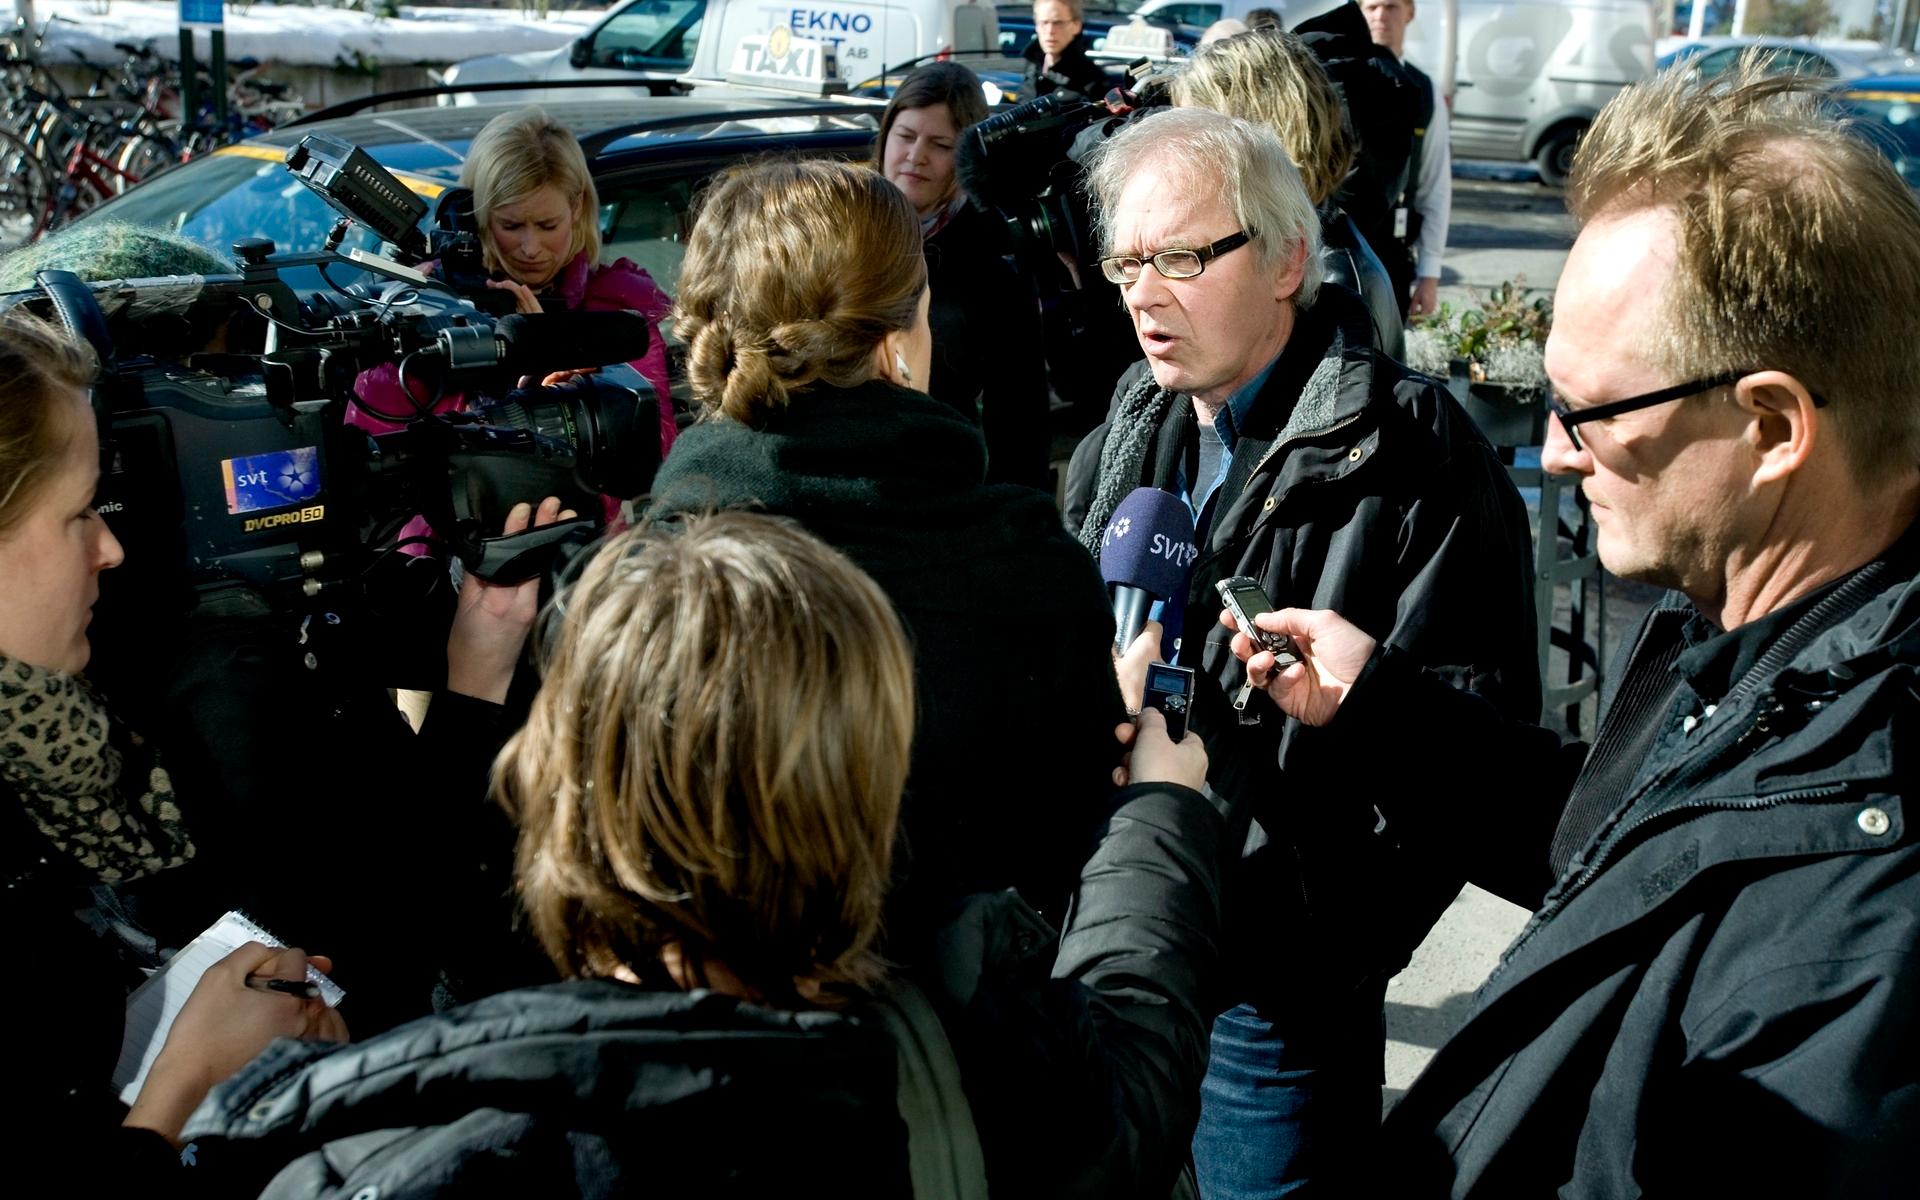 Konstnären efter ett framträdande i TV4, med anledning av mordkomplotterna mot honom. Bilden är tagen 2010.